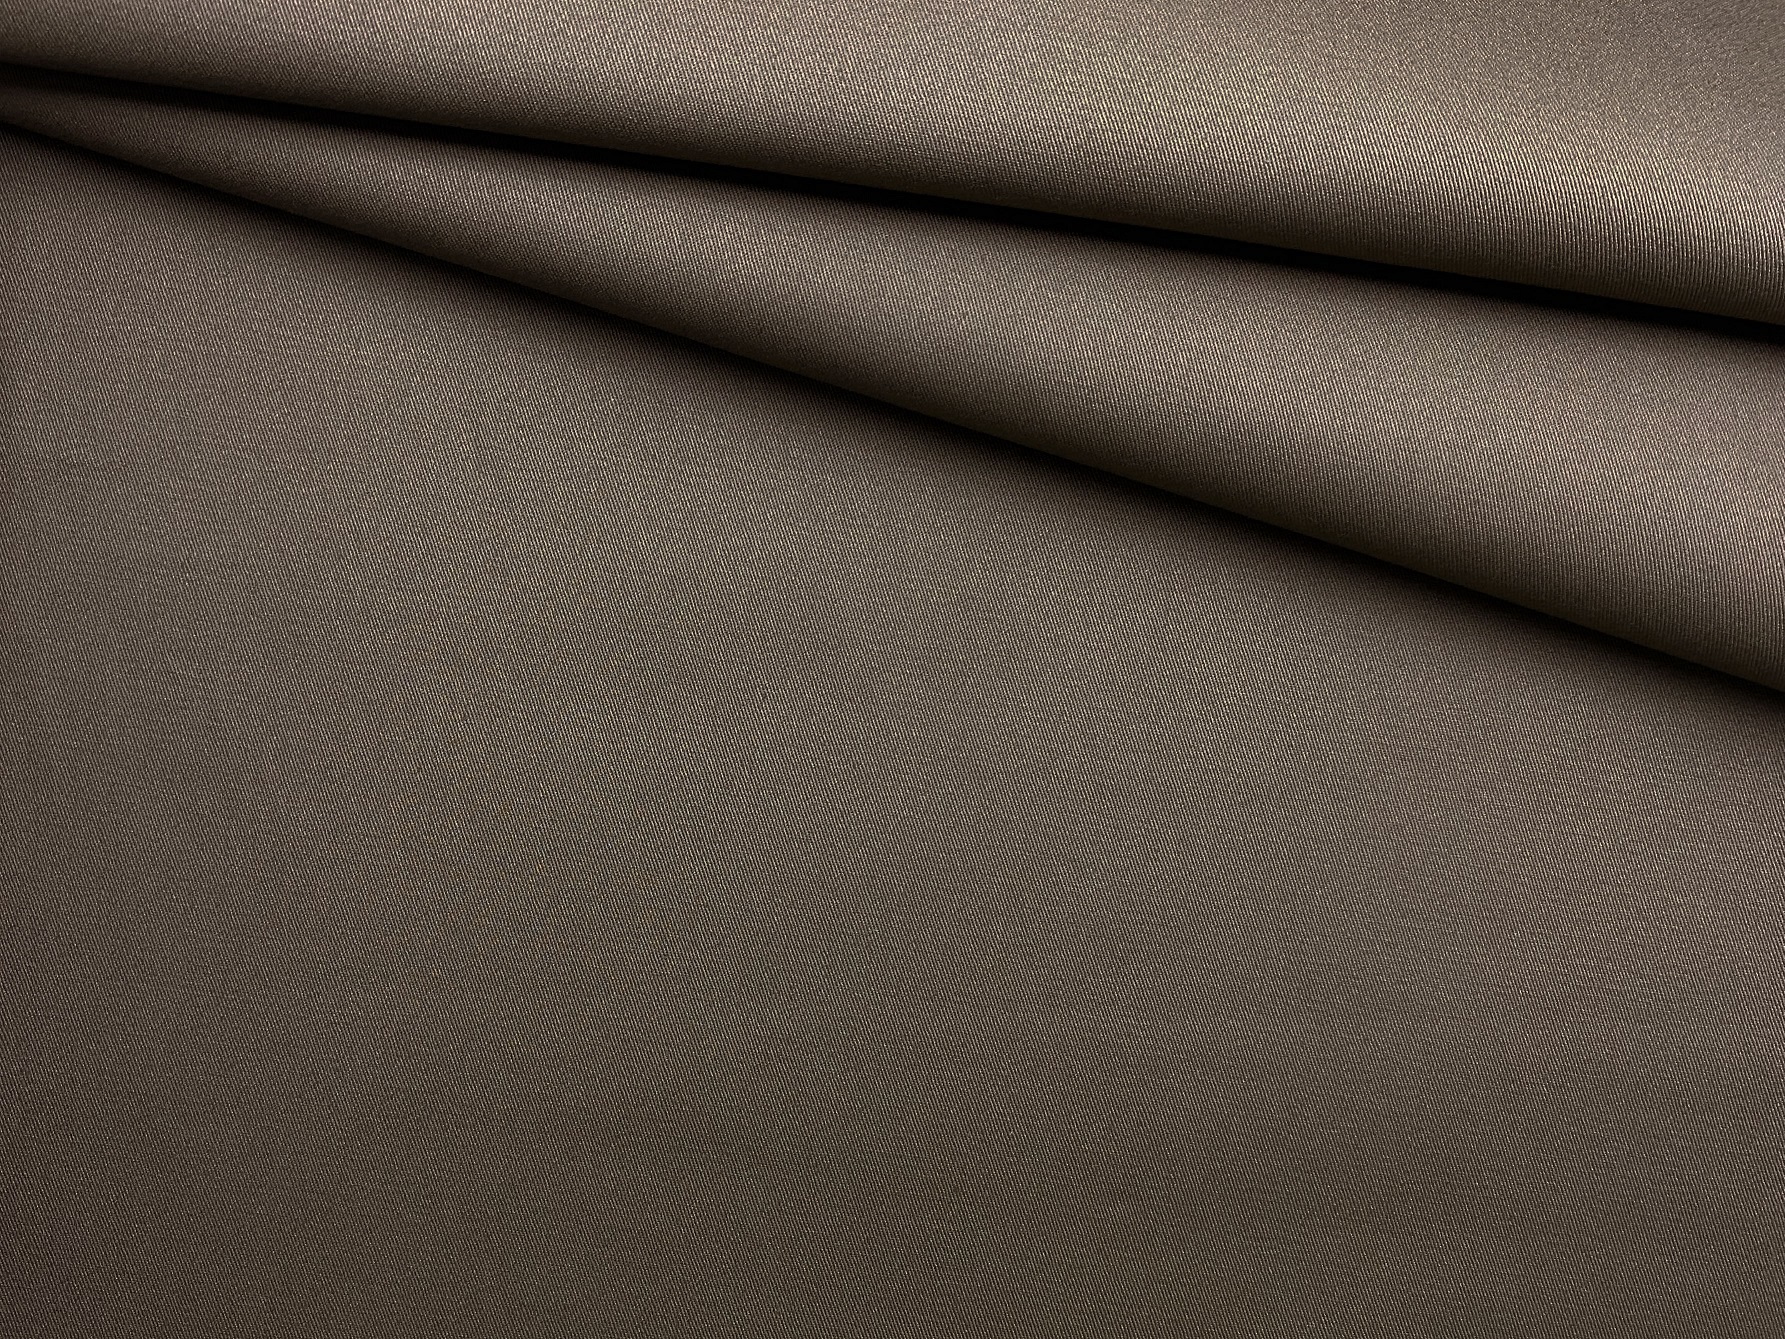 Ткань Хлопок  серо-коричневого цвета однотонная 16845 1